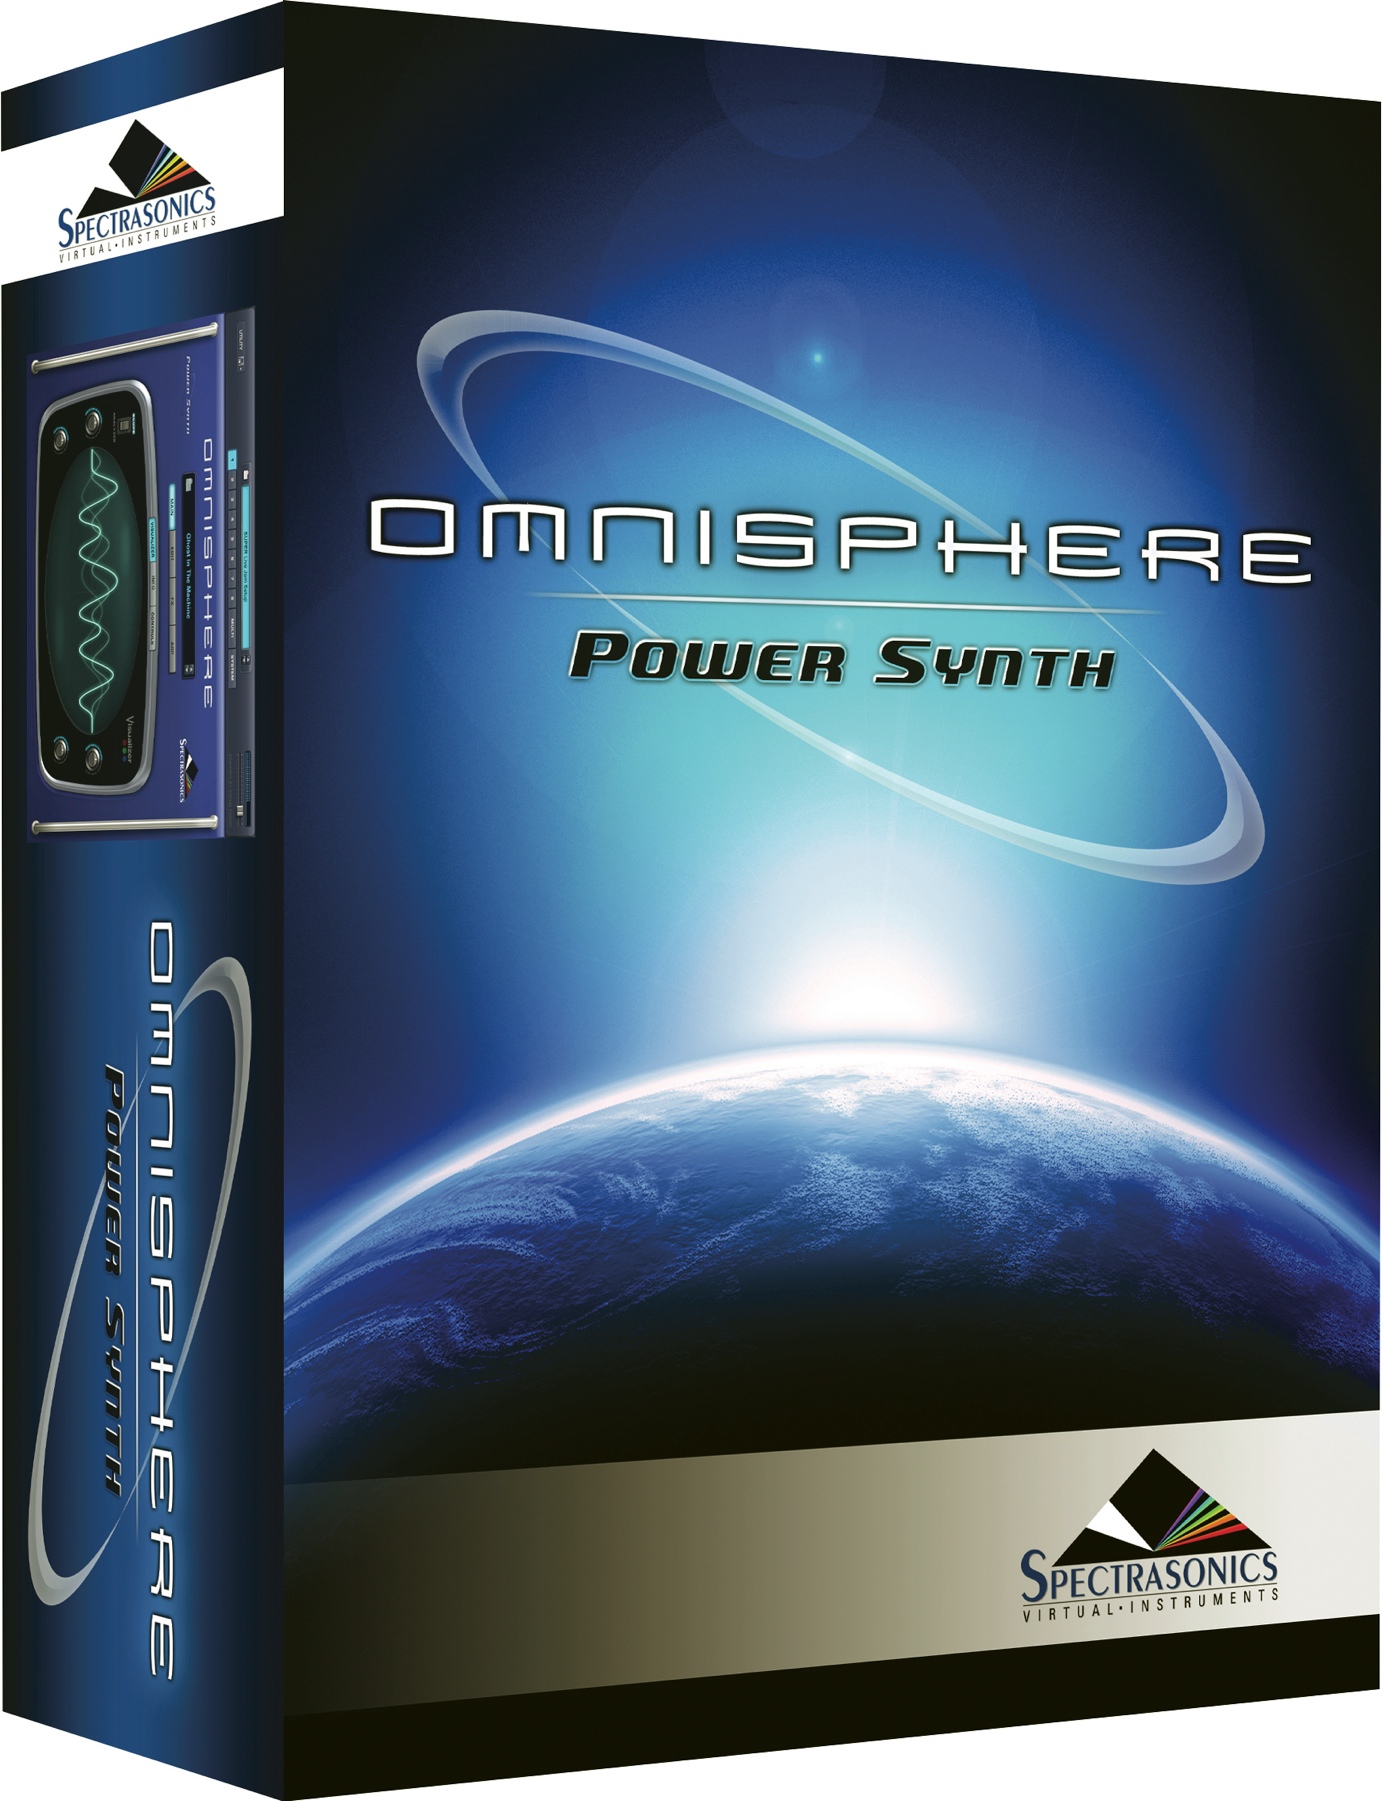 Spectrasonics Omnisphere 2 installer free download